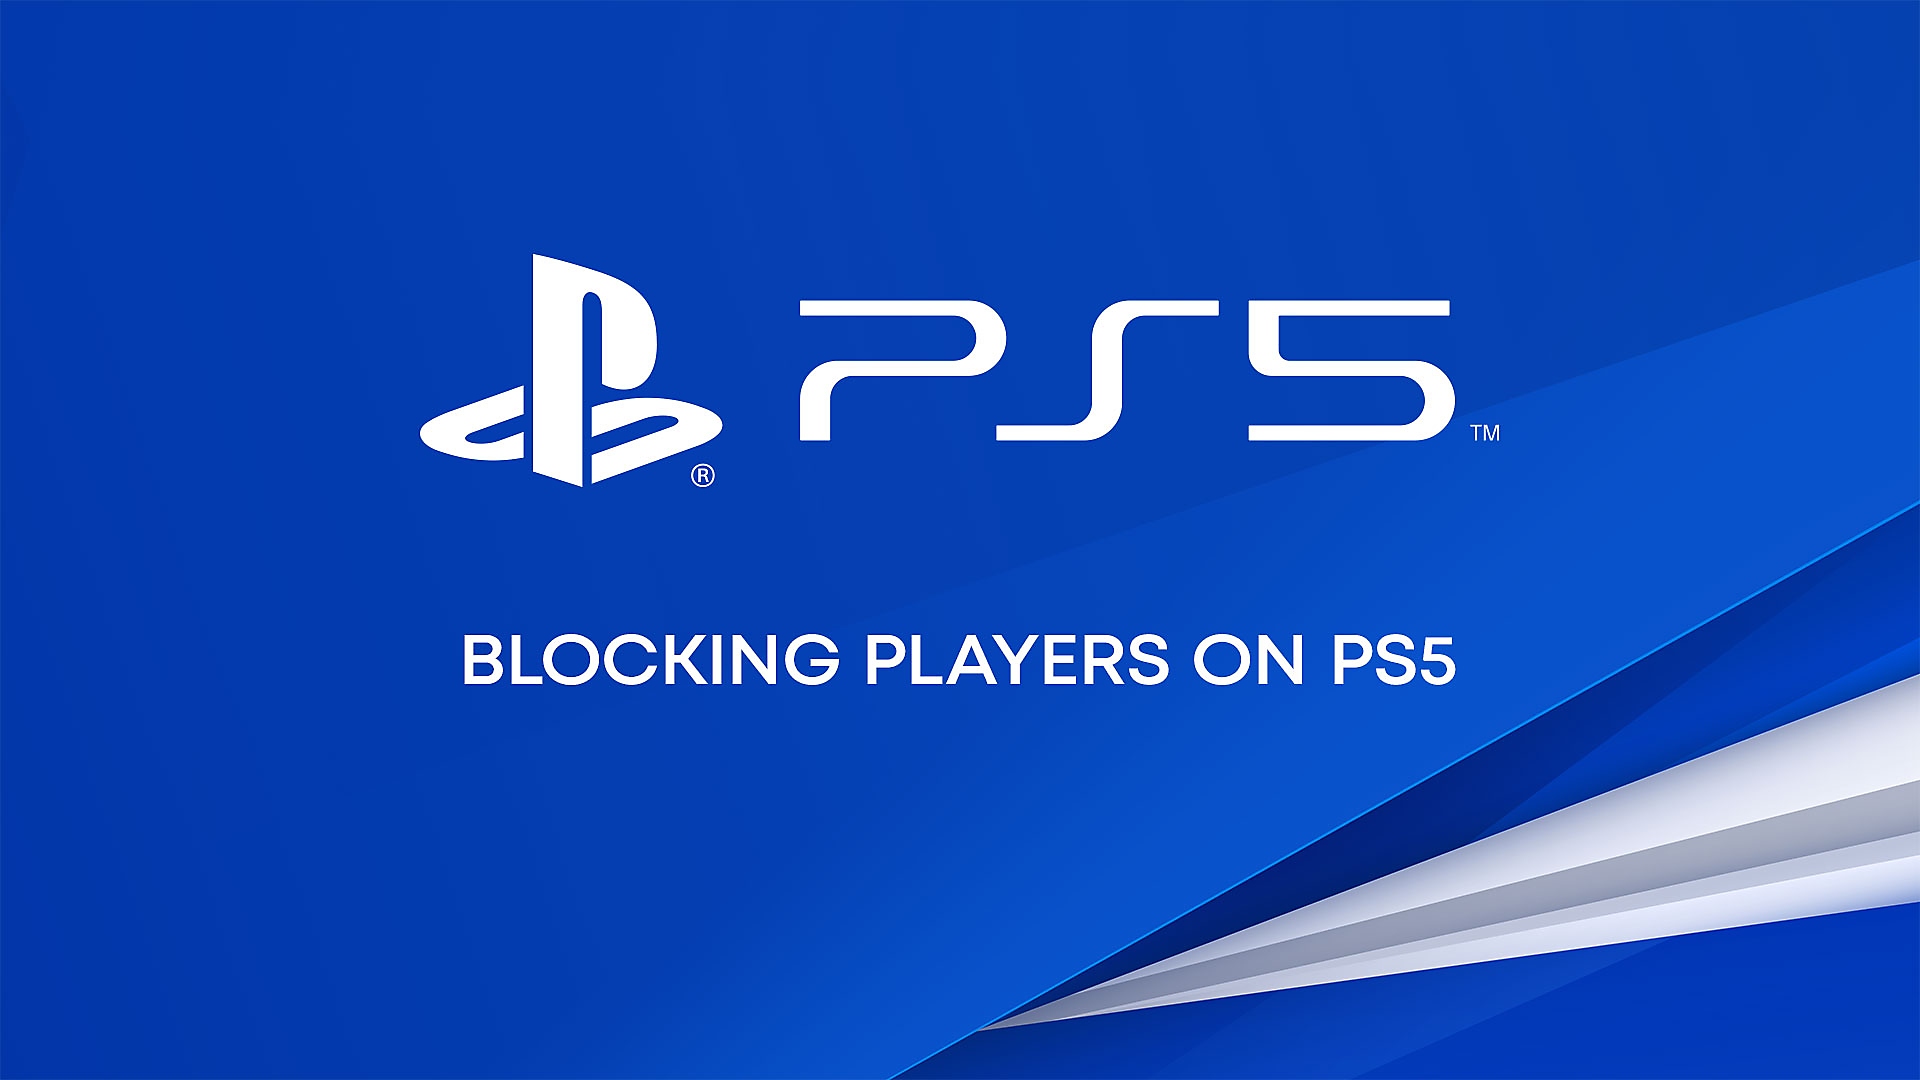 Video de YouTube acerca de cómo bloquear jugadores en la consola PS5